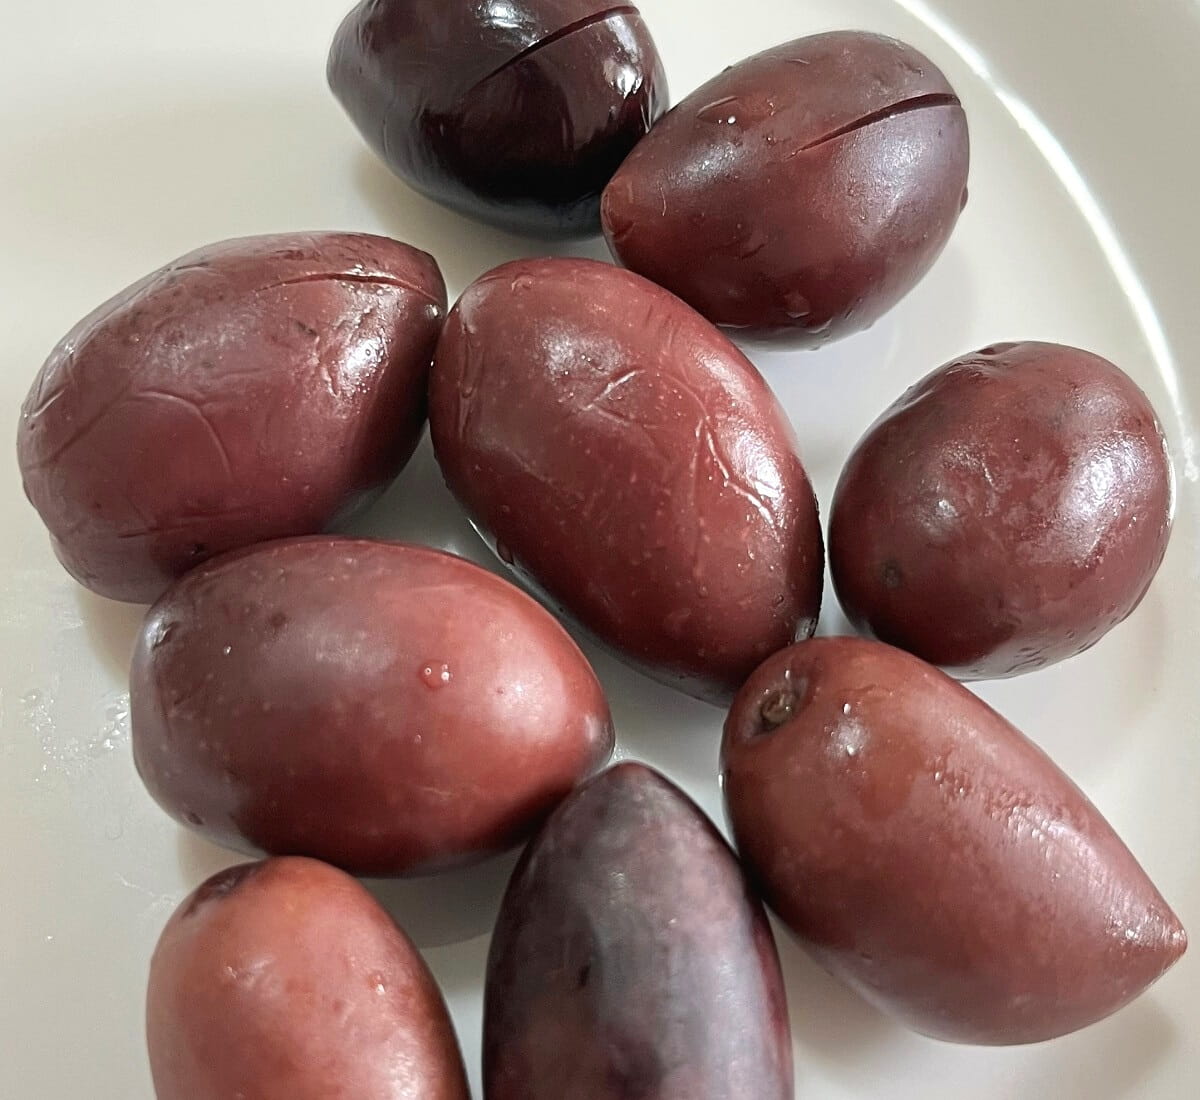 Kalamata olives in close-up view